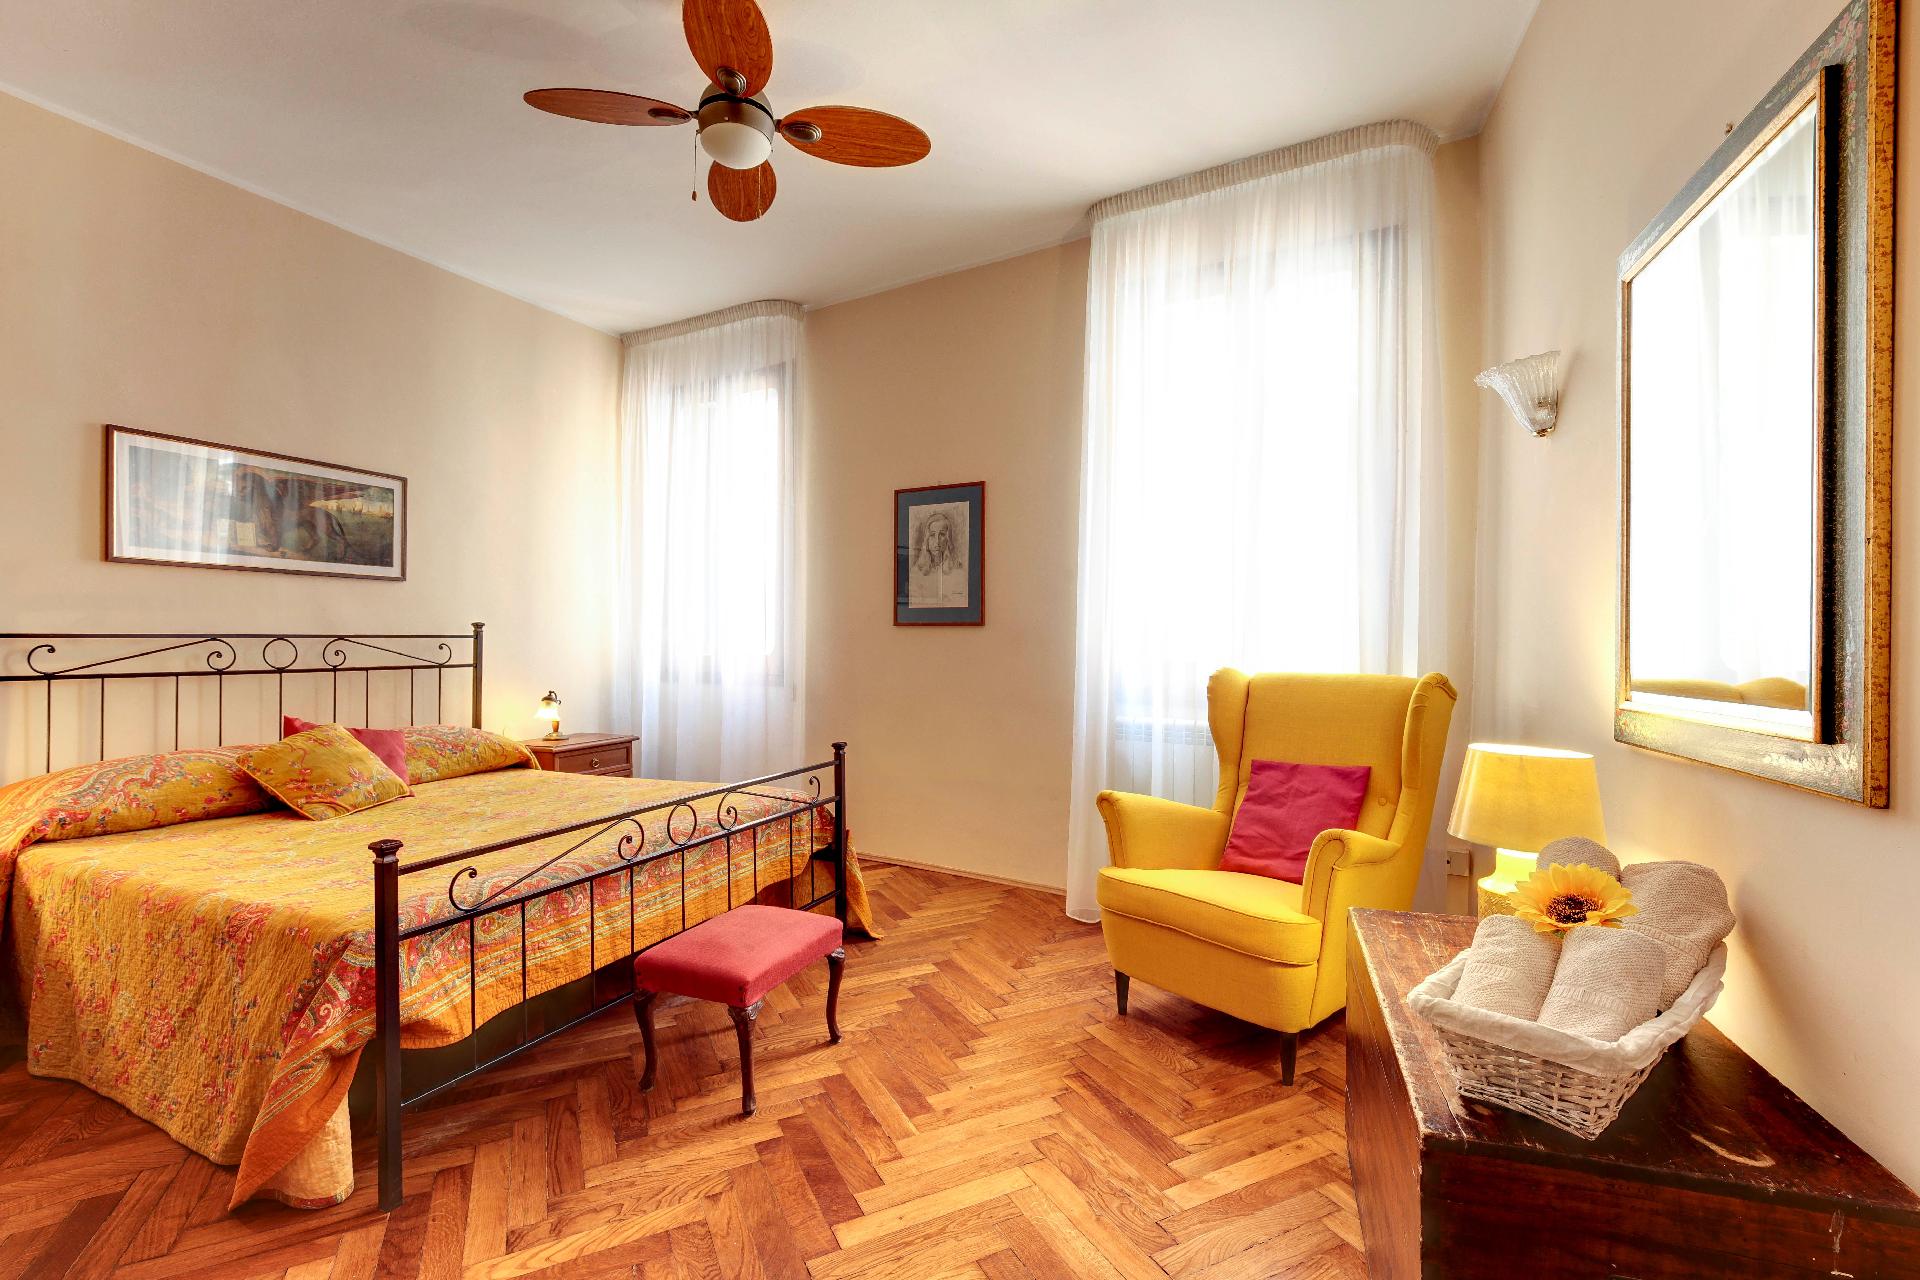 Ferienwohnung für 5 Personen ca. 120 m²  Ferienwohnung in Italien